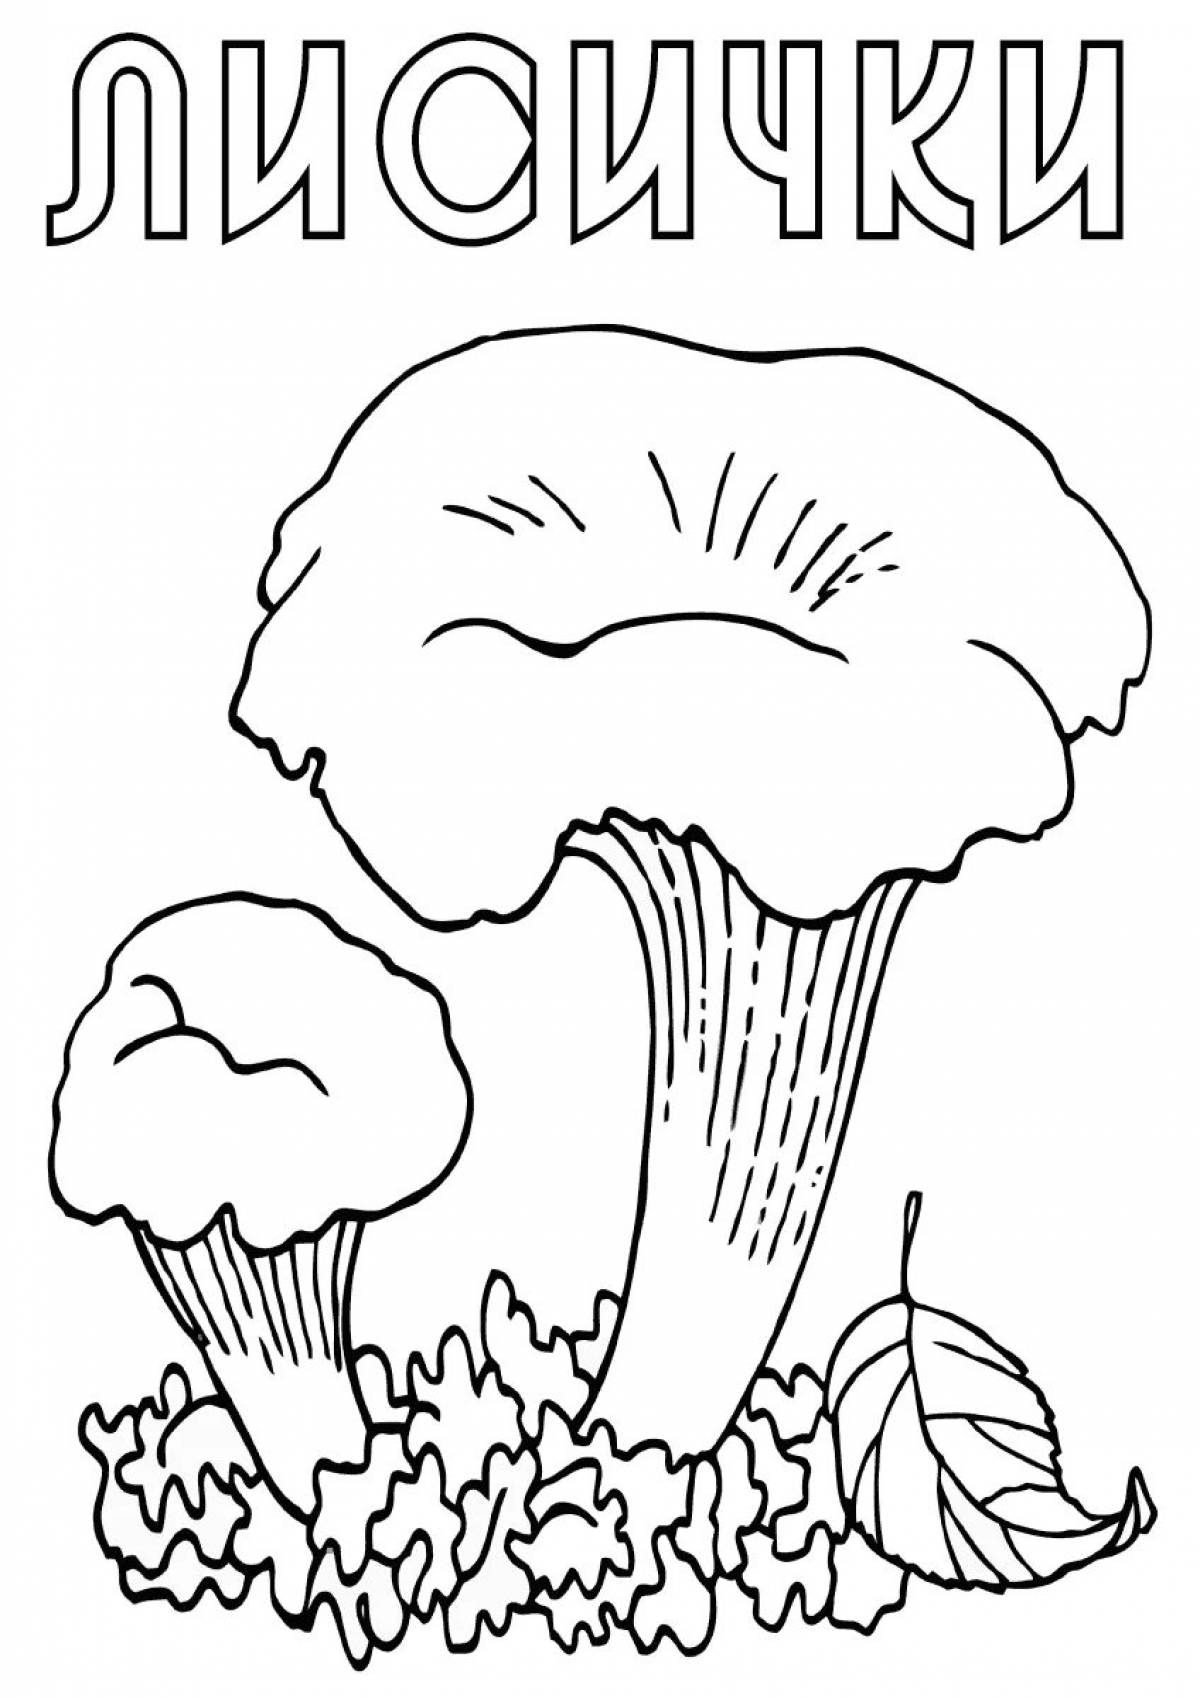 Children's chanterelle mushroom #5